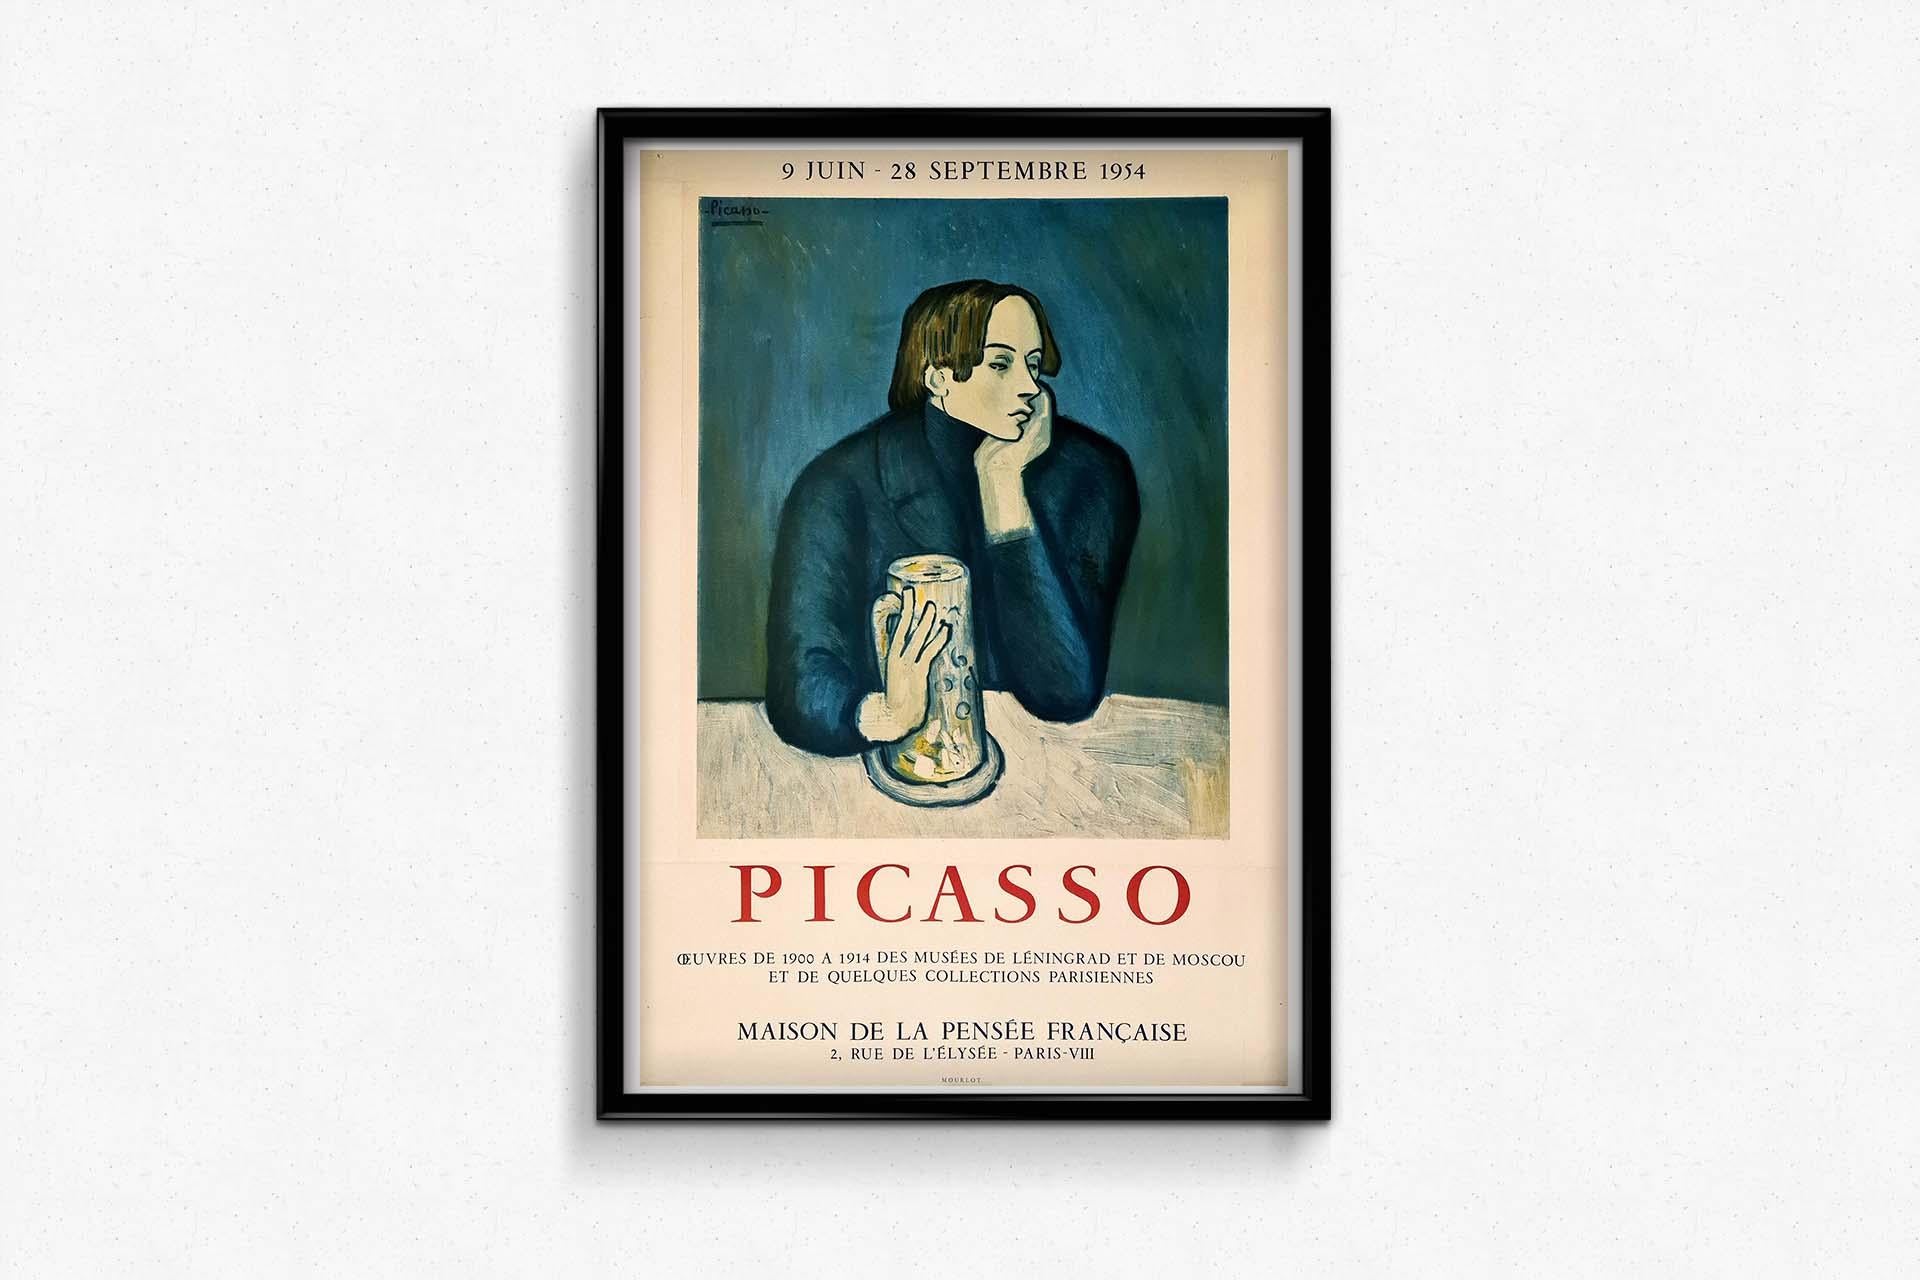 1954 Poster for the Maison de la pensée française by Pablo Picasso For Sale 3